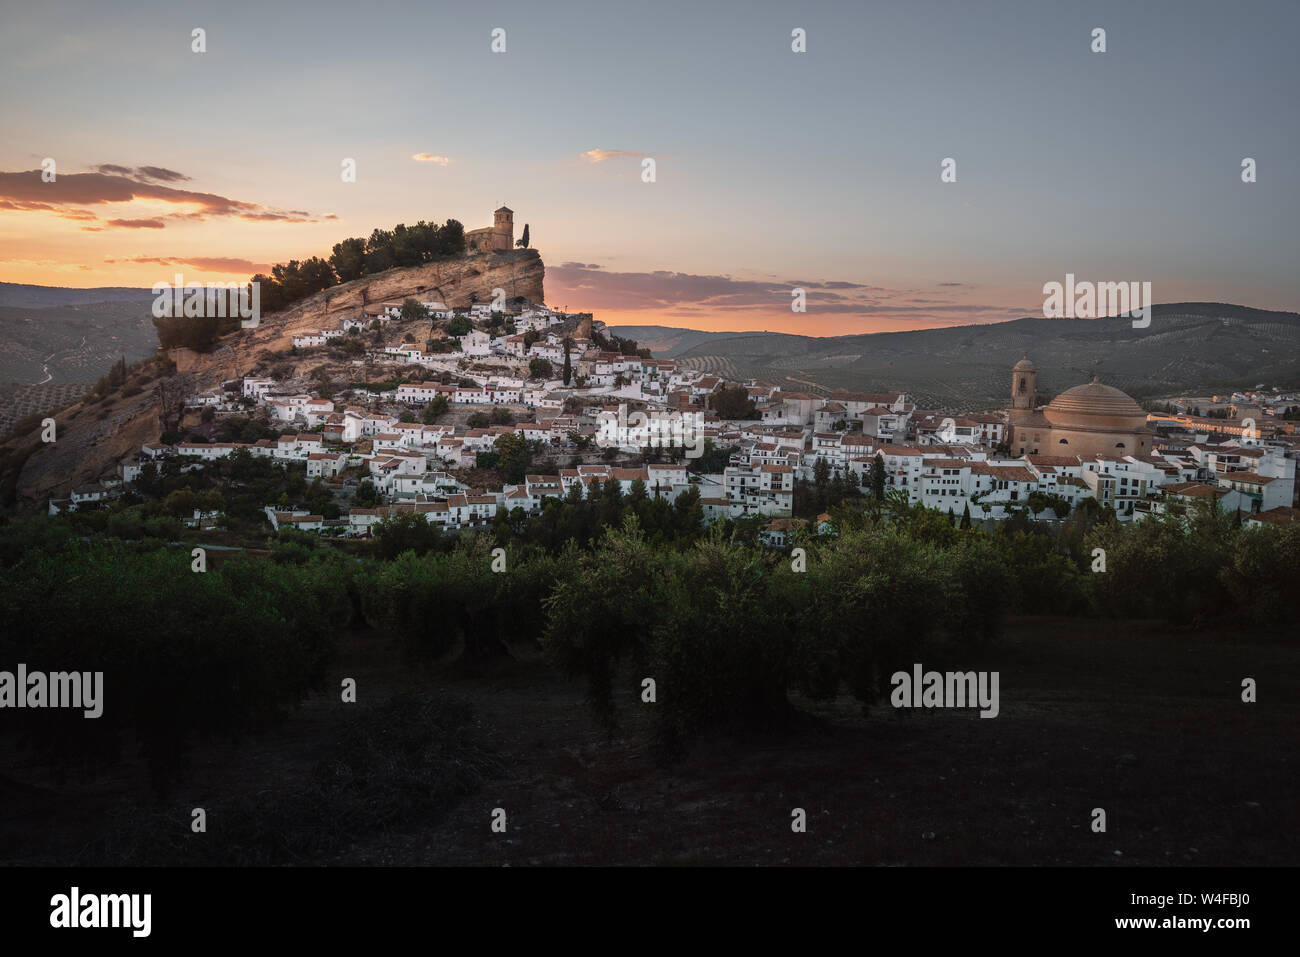 Luftaufnahme von Montefrio Stadt bei Sonnenuntergang - Montefrio, Provinz Granada, Andalusien, Spanien Stockfoto